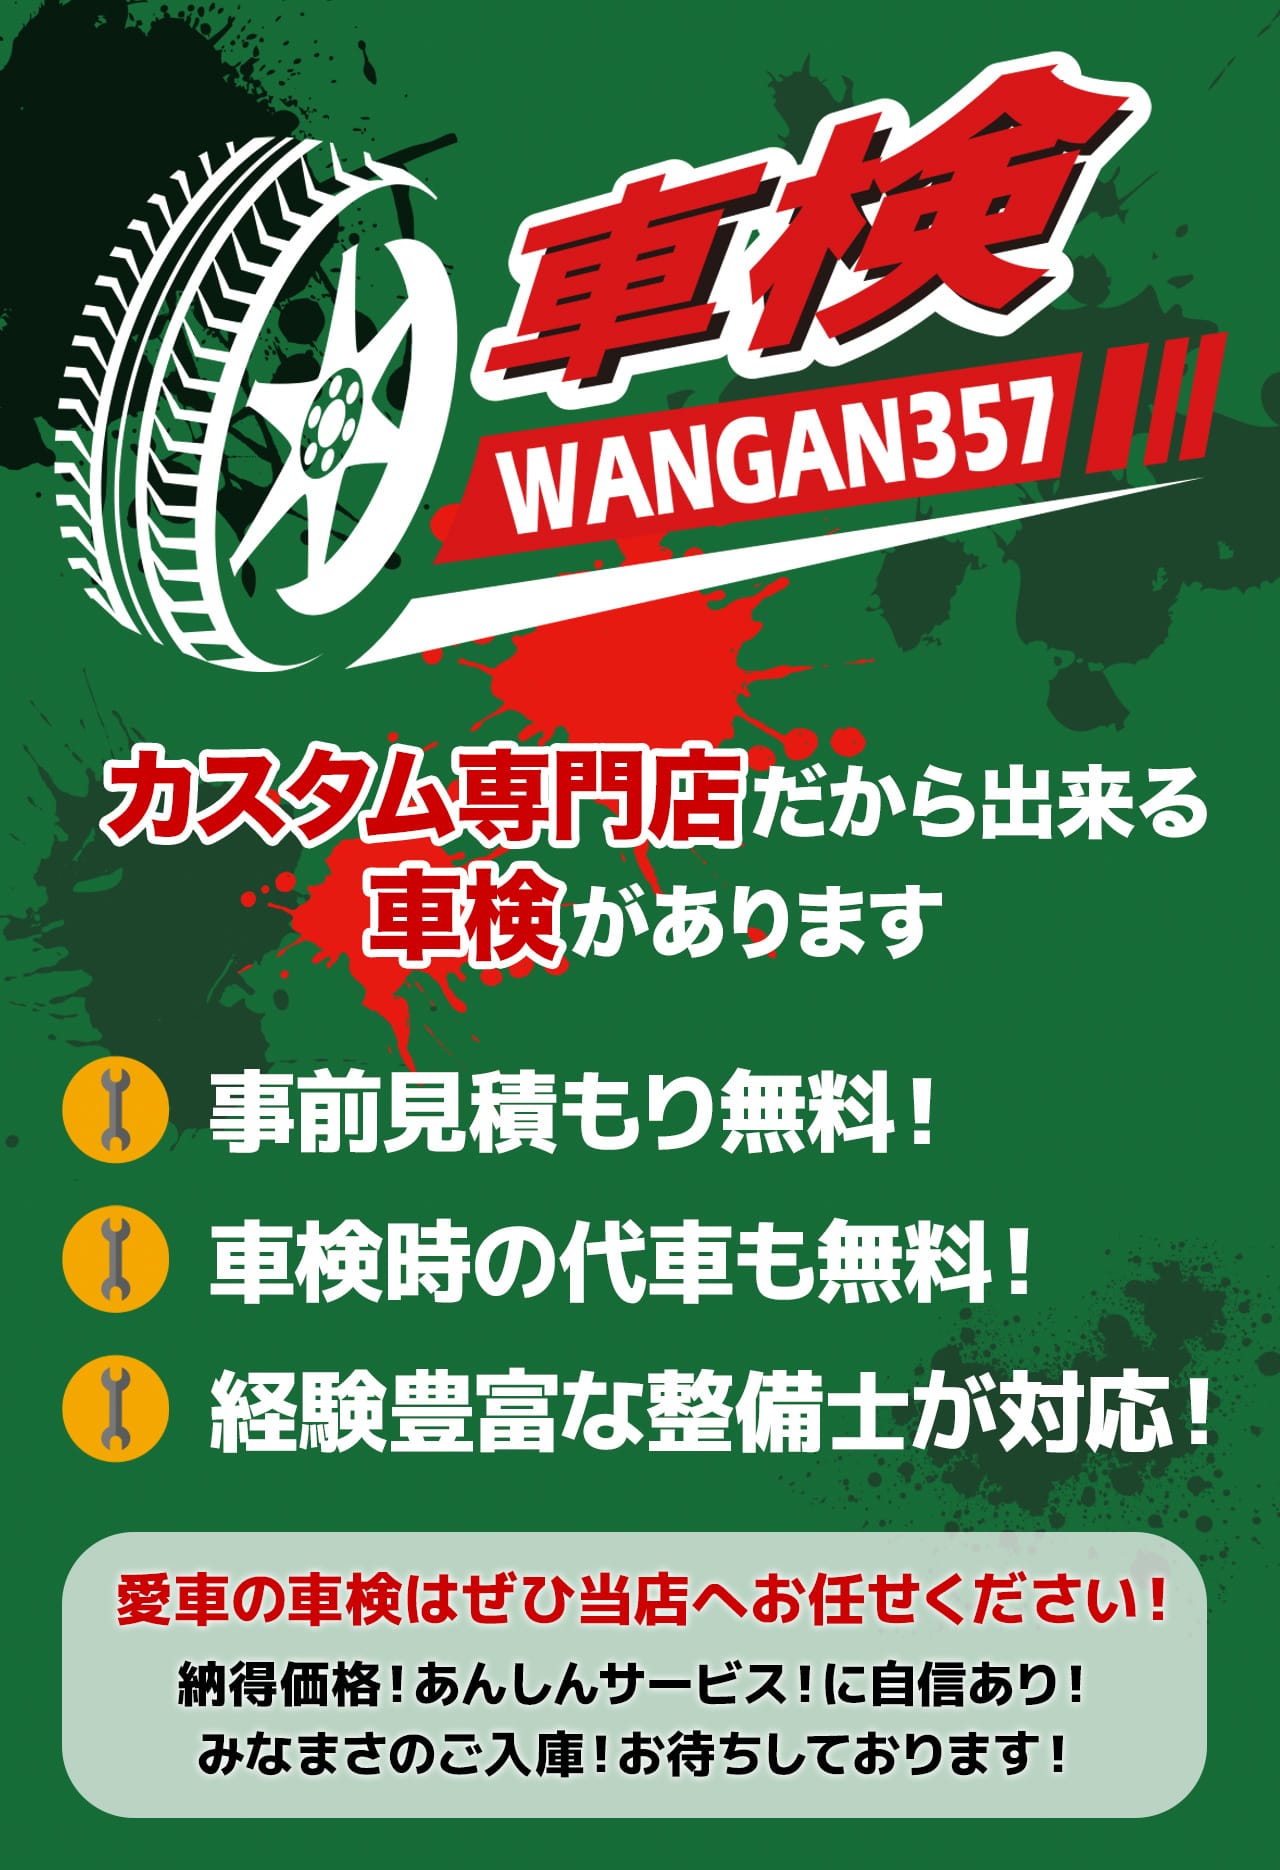 WANGAN357車検